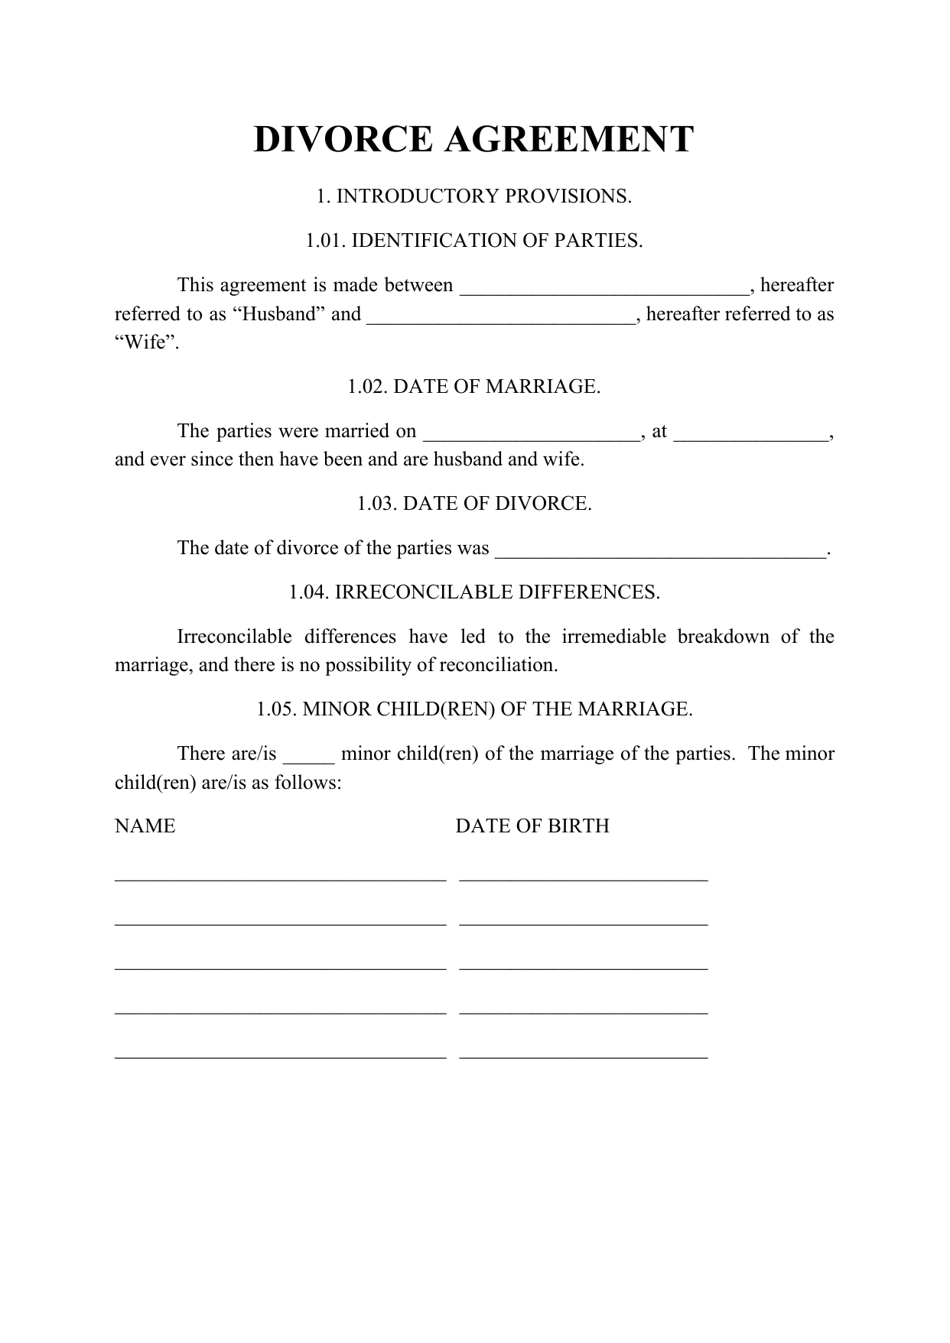 divorce pdf download